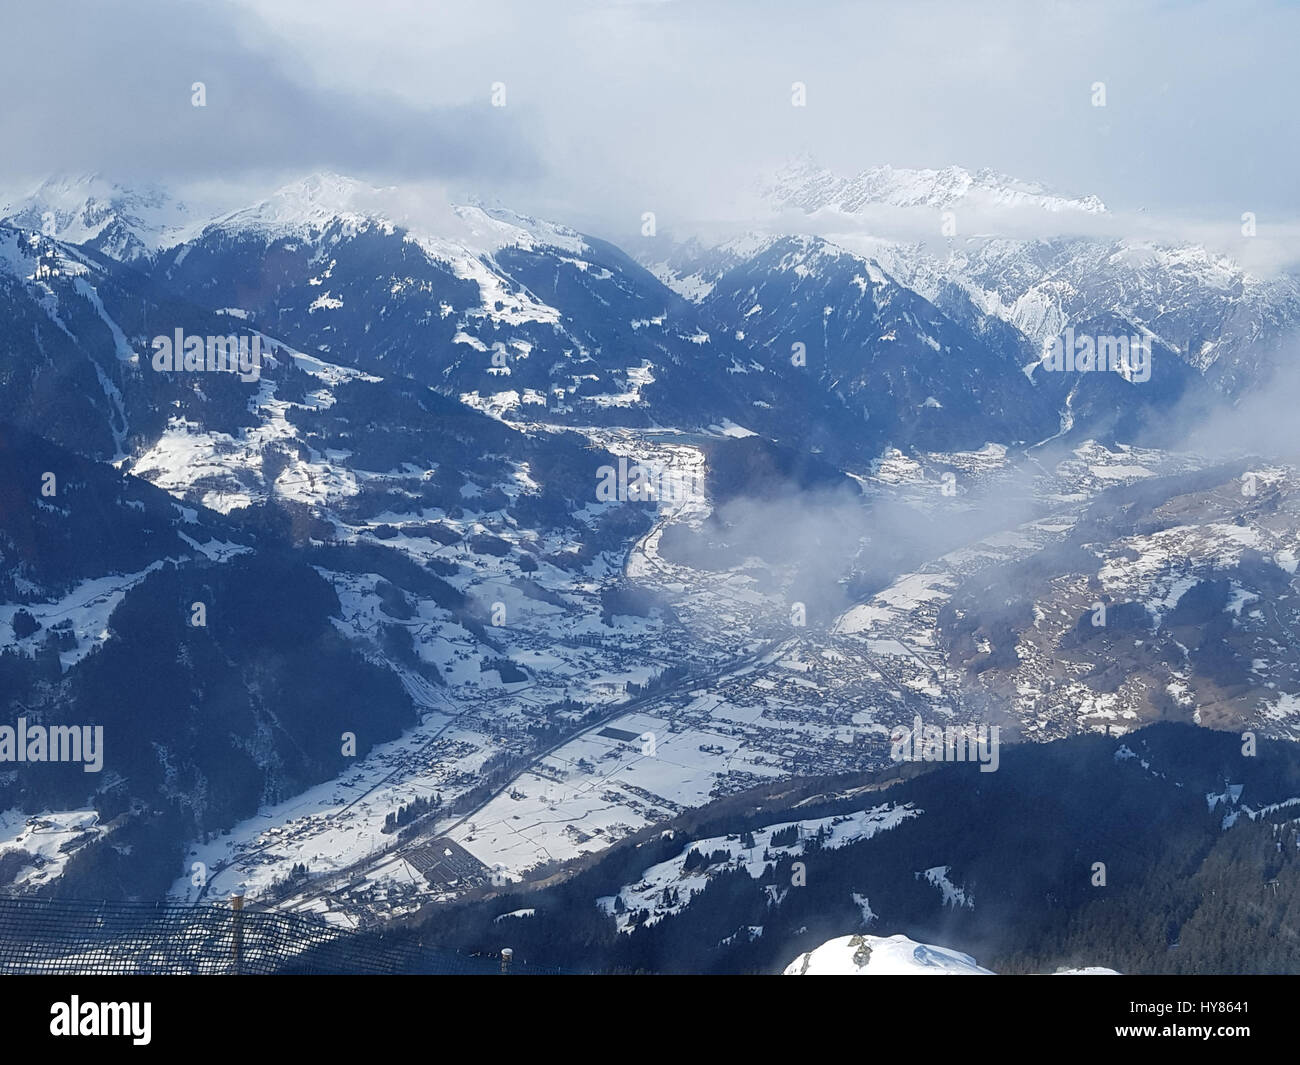 Schruns, Silvretta-Montafon, Vorarlberg, Autriche, Oesterreich Banque D'Images